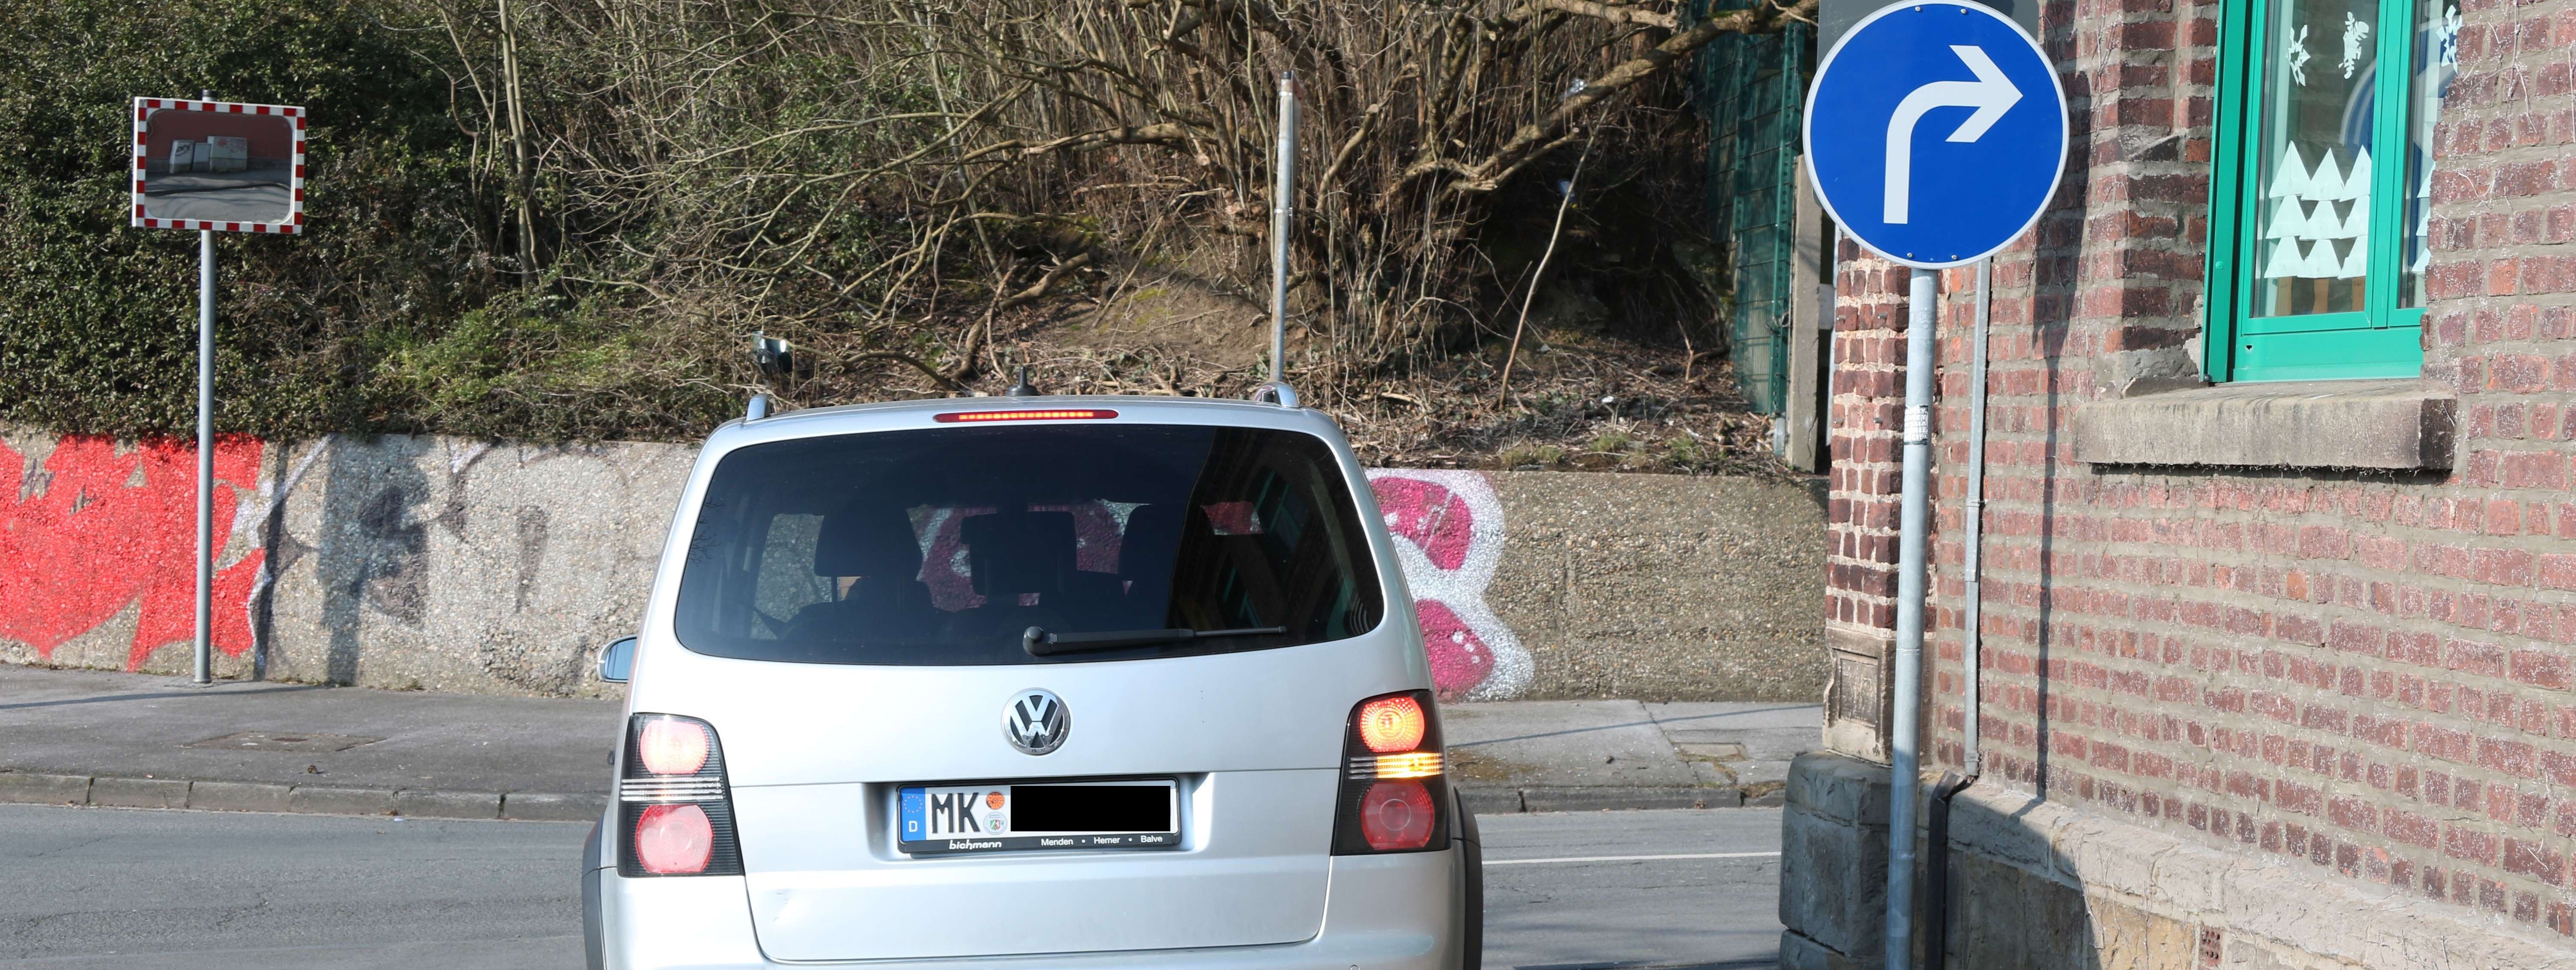 Ein silberner VW Touran fährt vom Parkplatz der Josefschule auf die Straße. Der Wagen hat den Blinker vorschriftsmäig nach rechts gesetzt. Neben dem Auto ist das neue Schild zu sehen. Es ist rund und zeigt einen weißen Pfeil auf blauem Grund. Es zeigt an, dass hier nur nach rechts abgebogen werden darf.